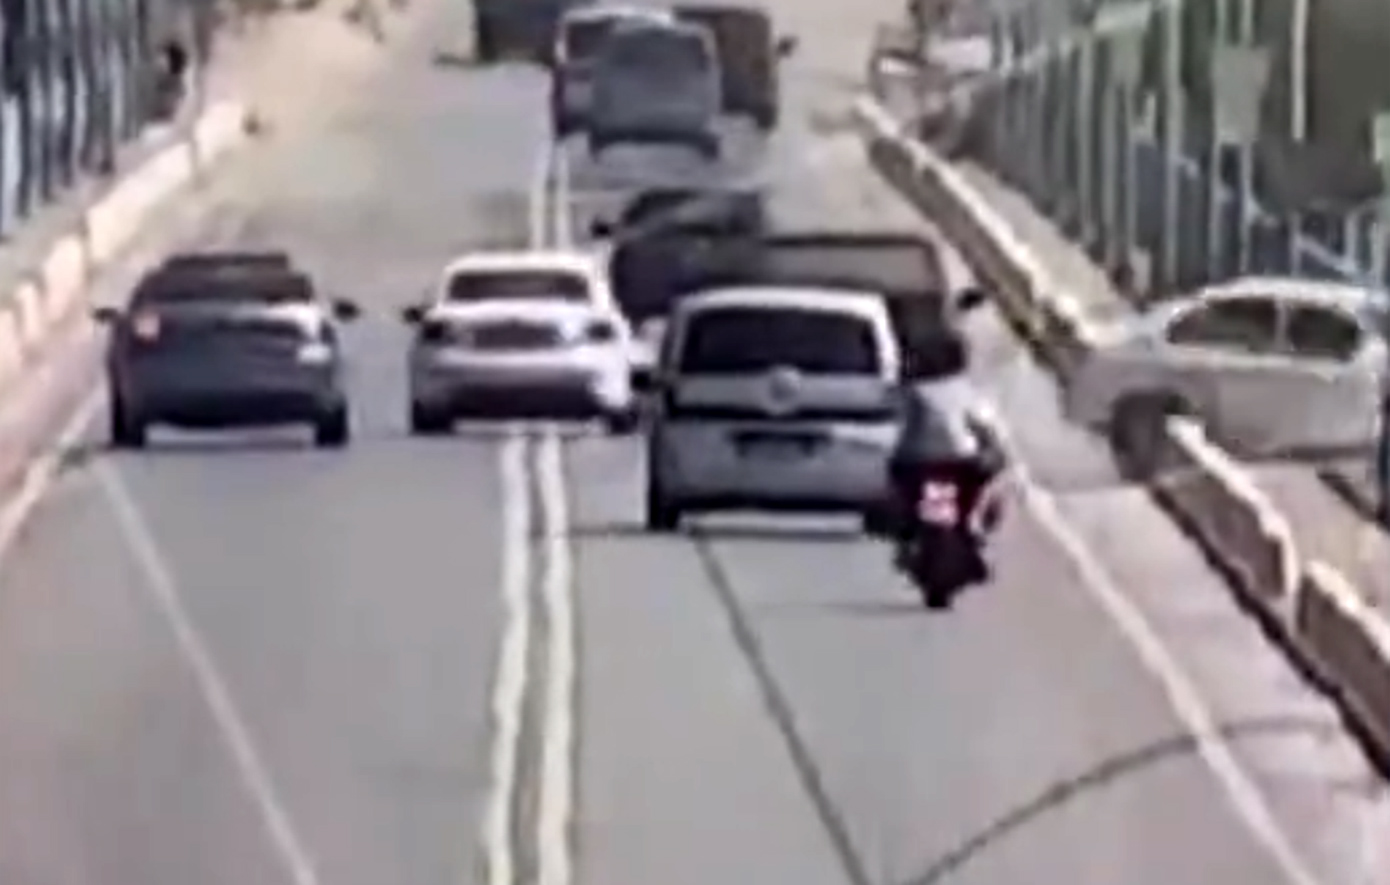 Τρομακτικό βίντεο με οικογένεια που πήγαινε για πικ νικ και τελικά ξεκληρίστηκε, αφού έπεσαν από γέφυρα